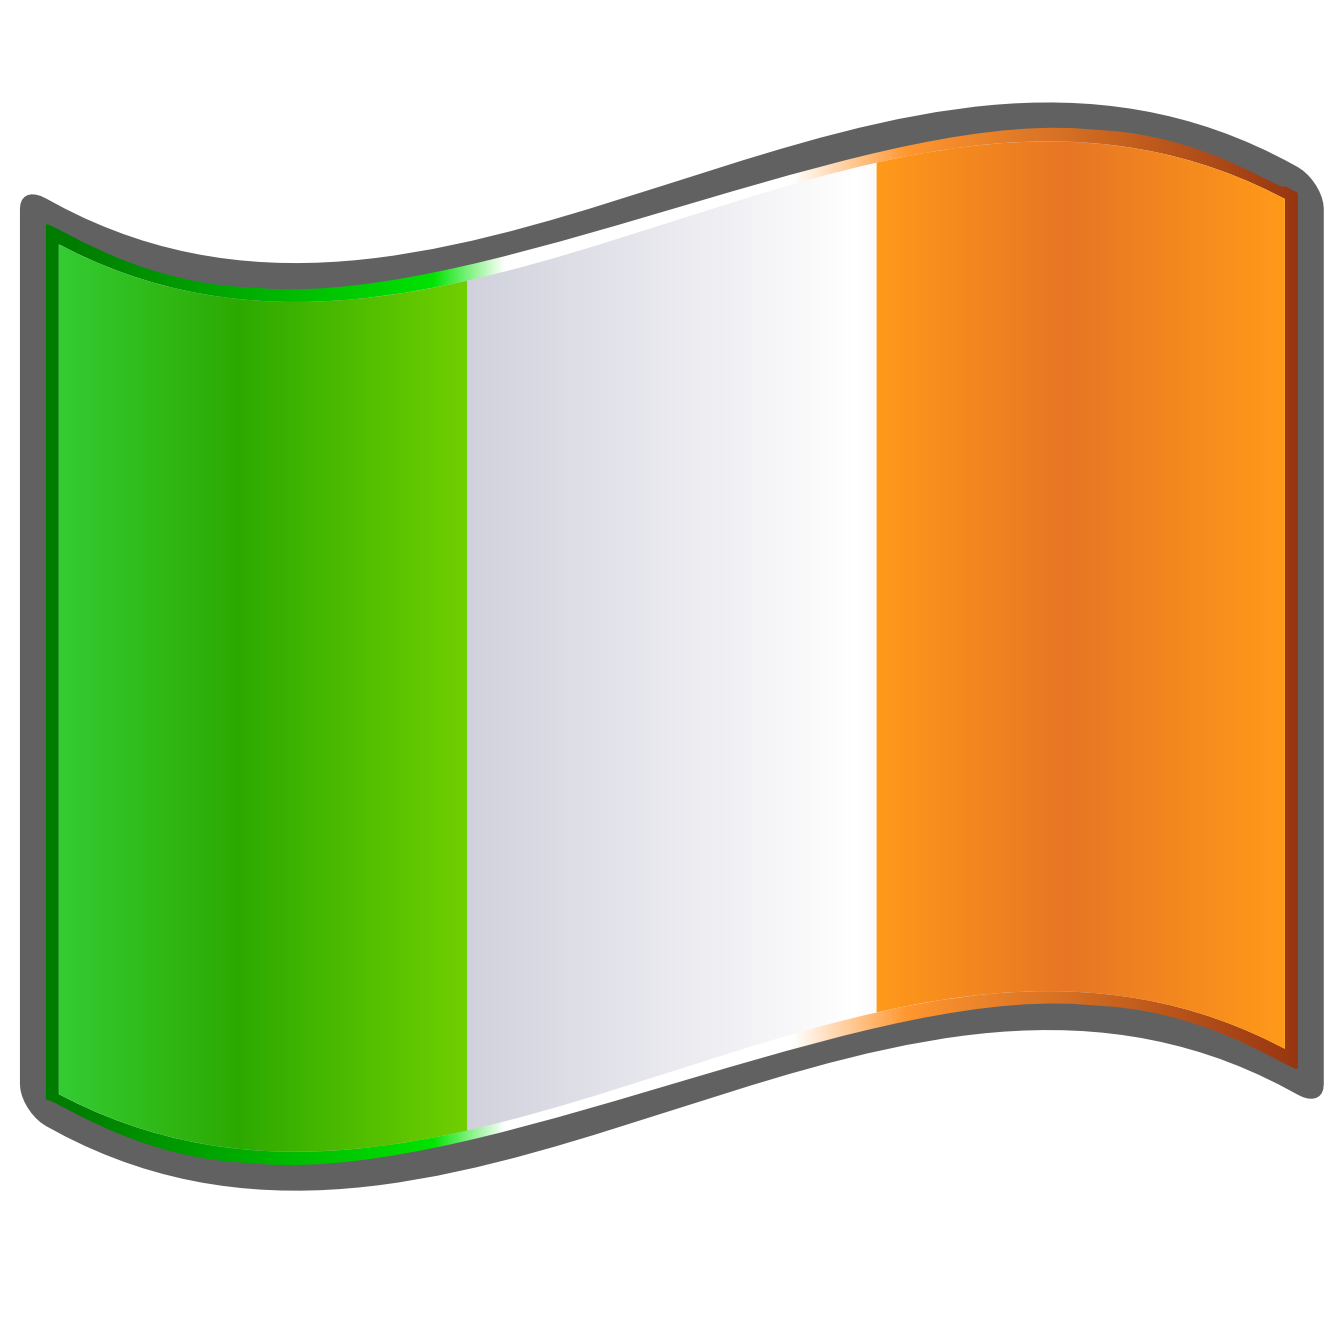 العلم أيرلندا يلوح بالـ بي إن جي